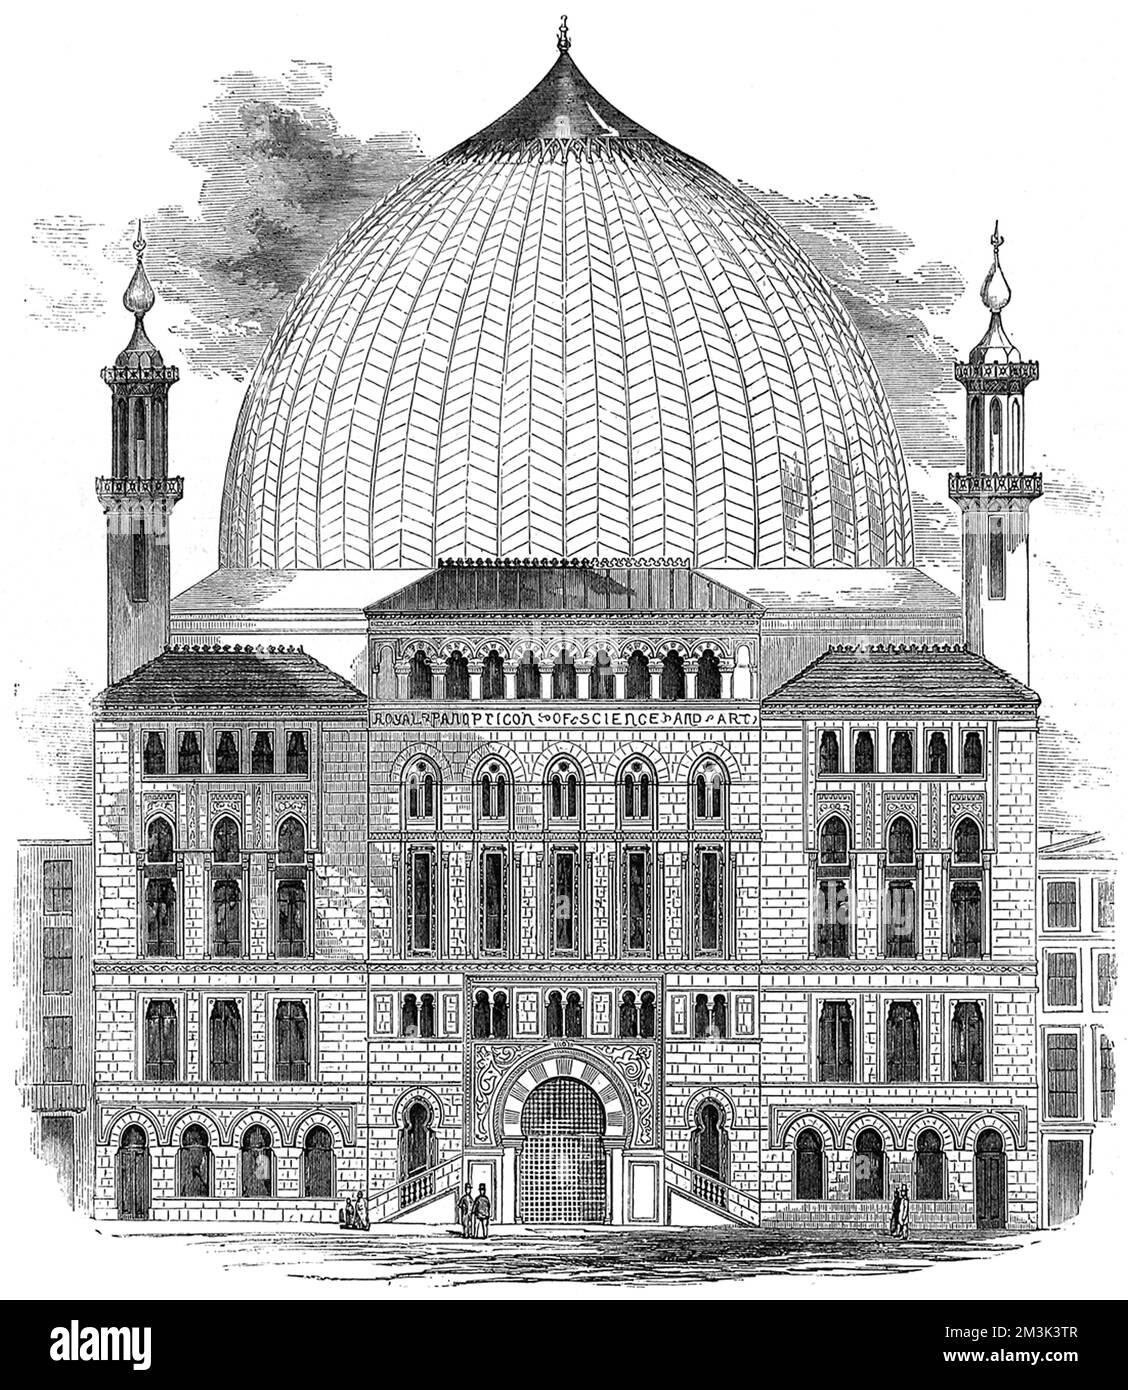 Il Panopticon reale della scienza e dell'arte, che è stato costruito in piazza Leicester durante 1852. Una volta costruita, la cupola del Panopticon era di dimensioni leggermente inferiori a quelle suggerite da questa immagine. Questo edificio divenne poi il Teatro Alhambra e poi l'Odeon. 1852 Foto Stock